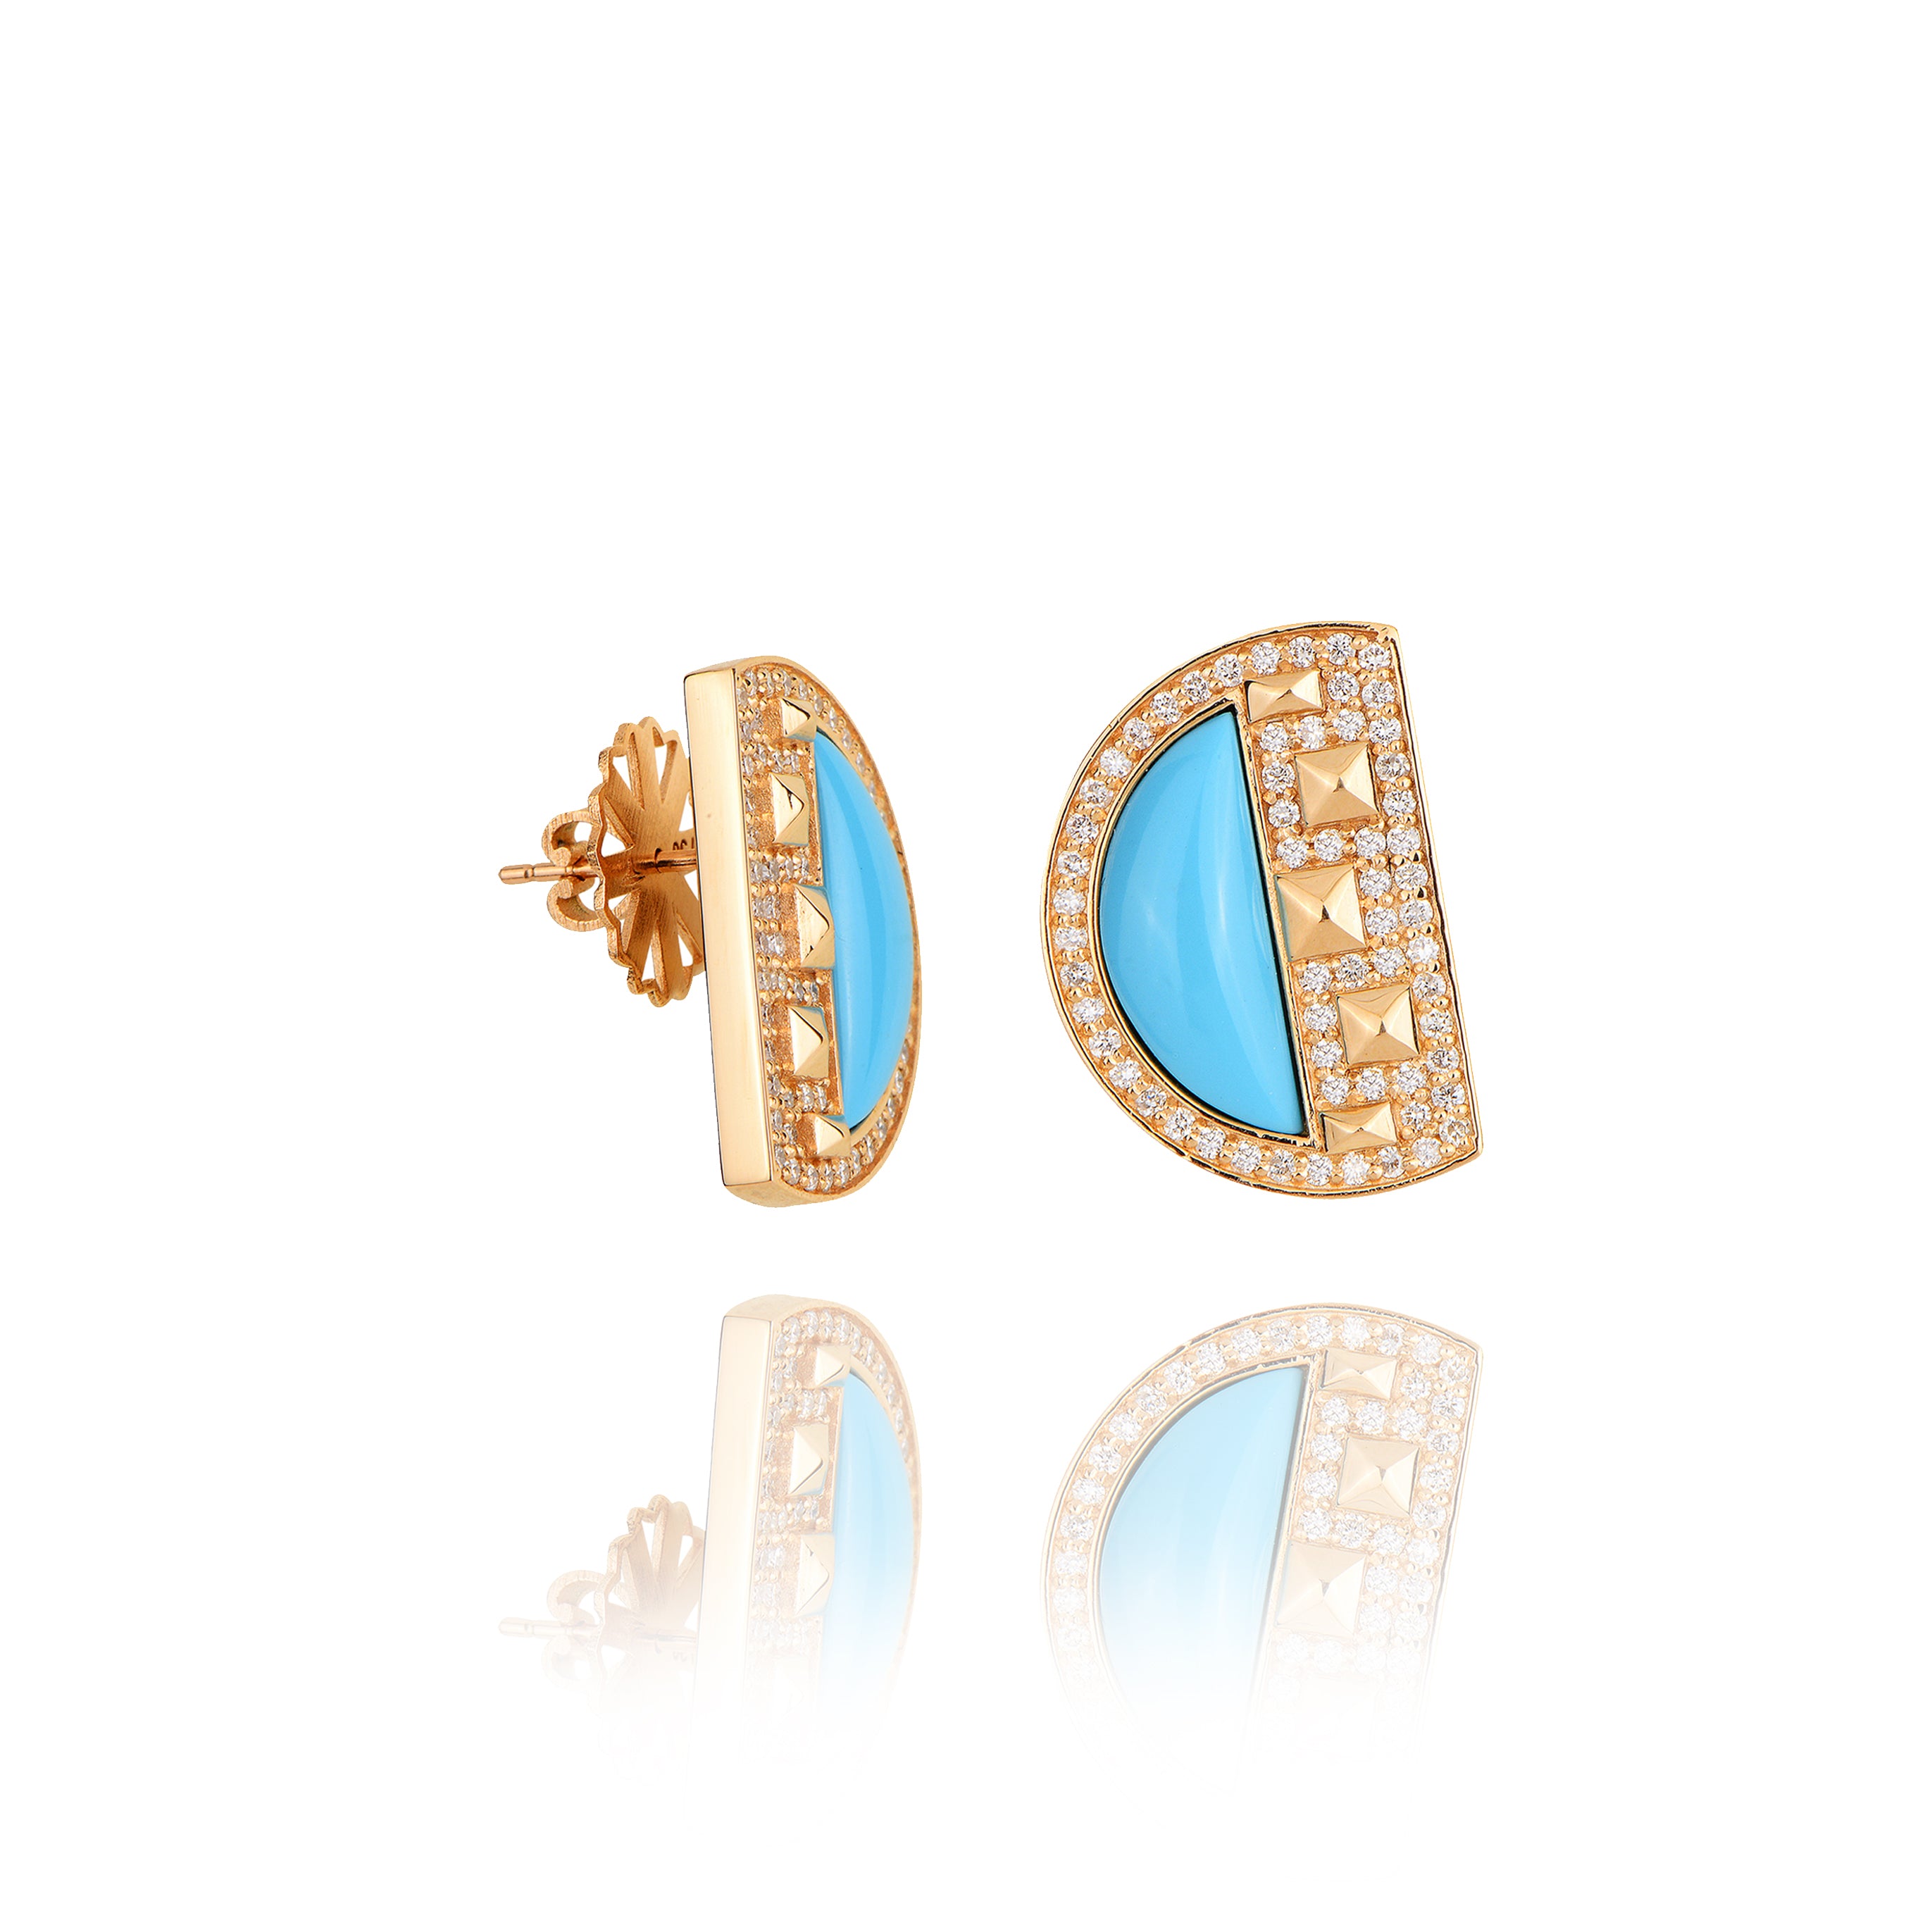 Neutra Cairo Earrings - Turquoise